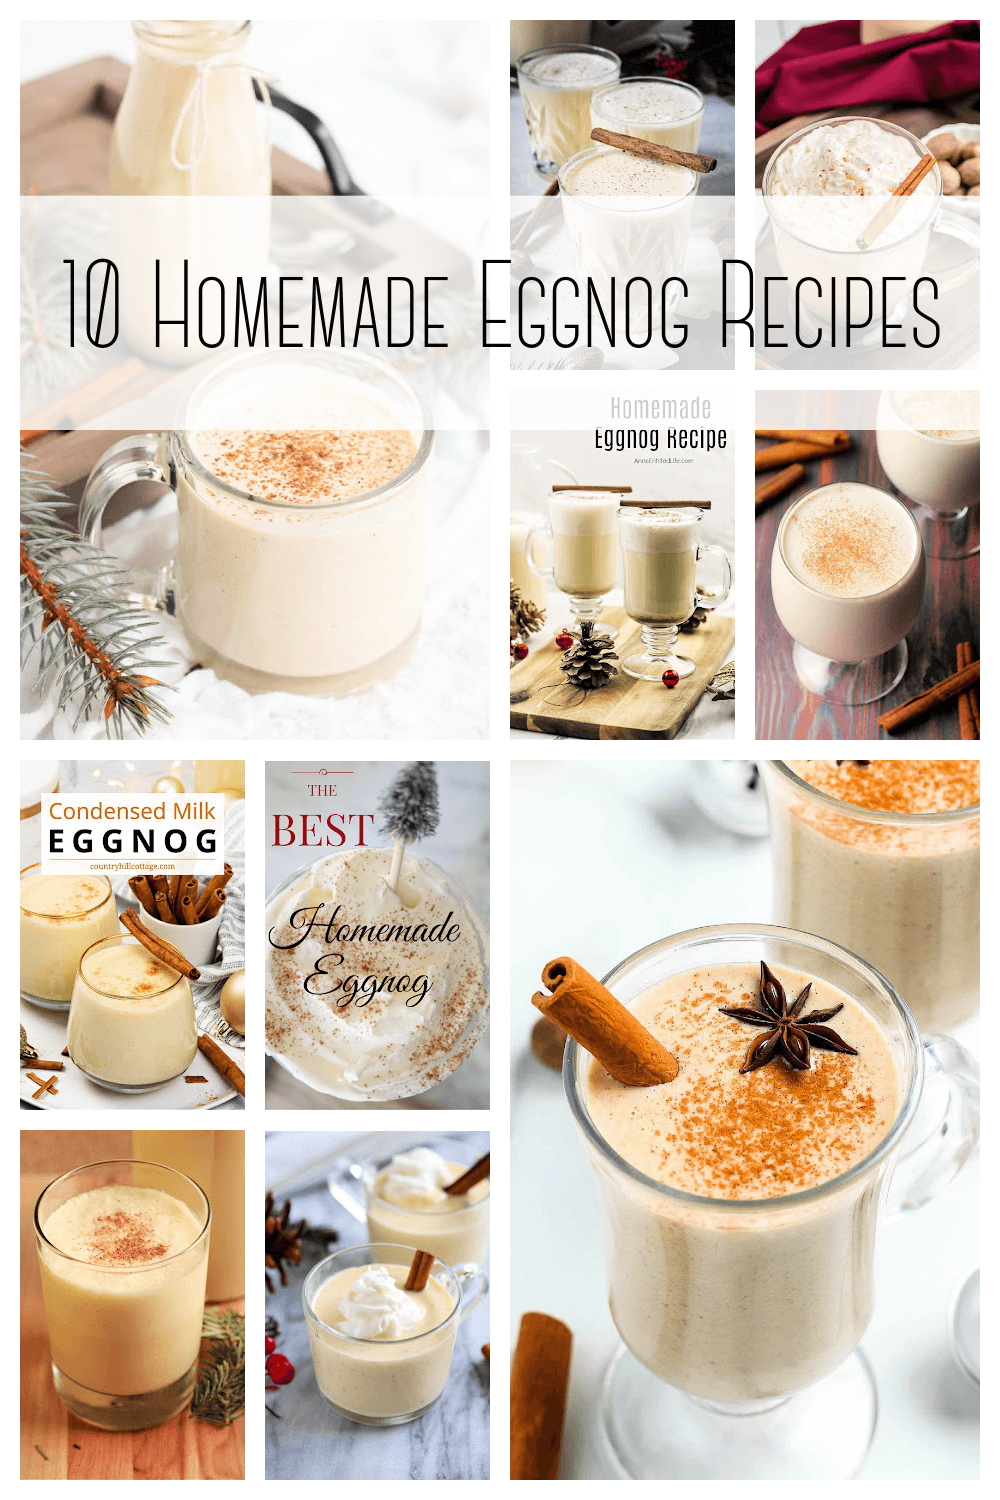 10 Homemade Eggnog Recipes